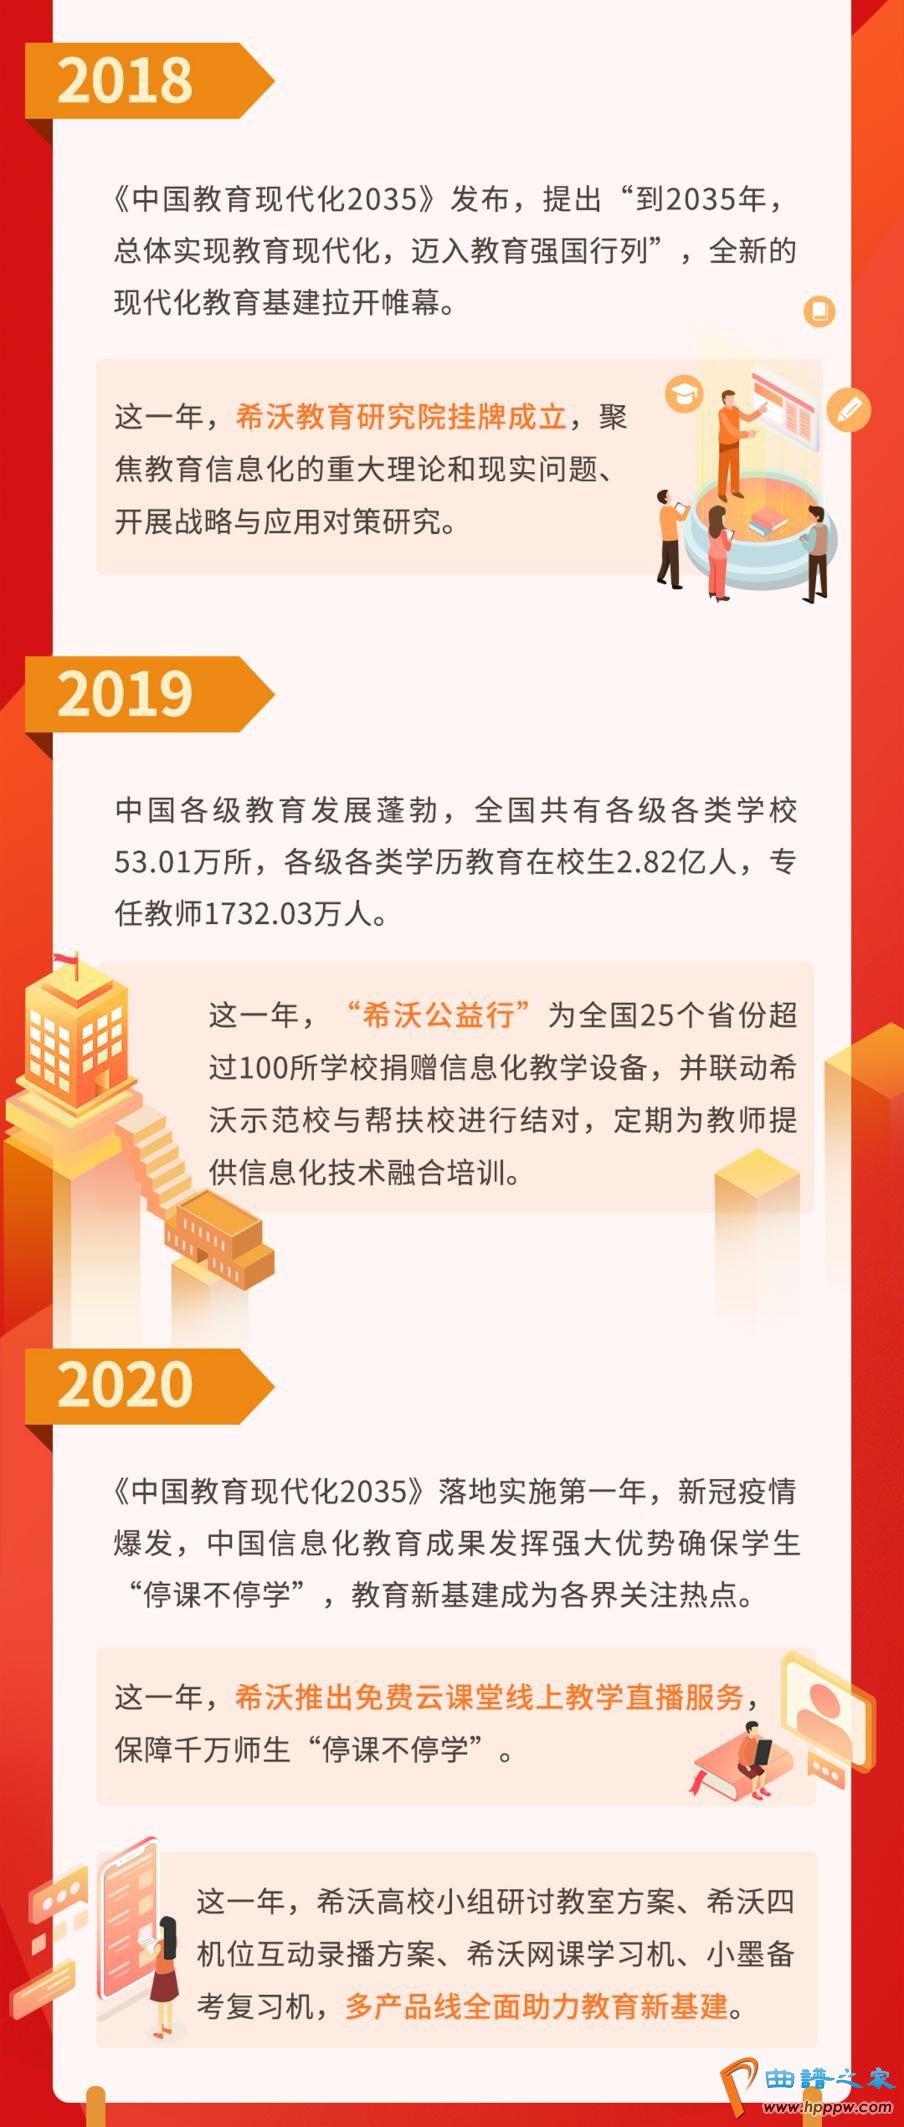 love爱博体育app下载:中国帮助老年人成为促进信息技术造福民生的应有意义